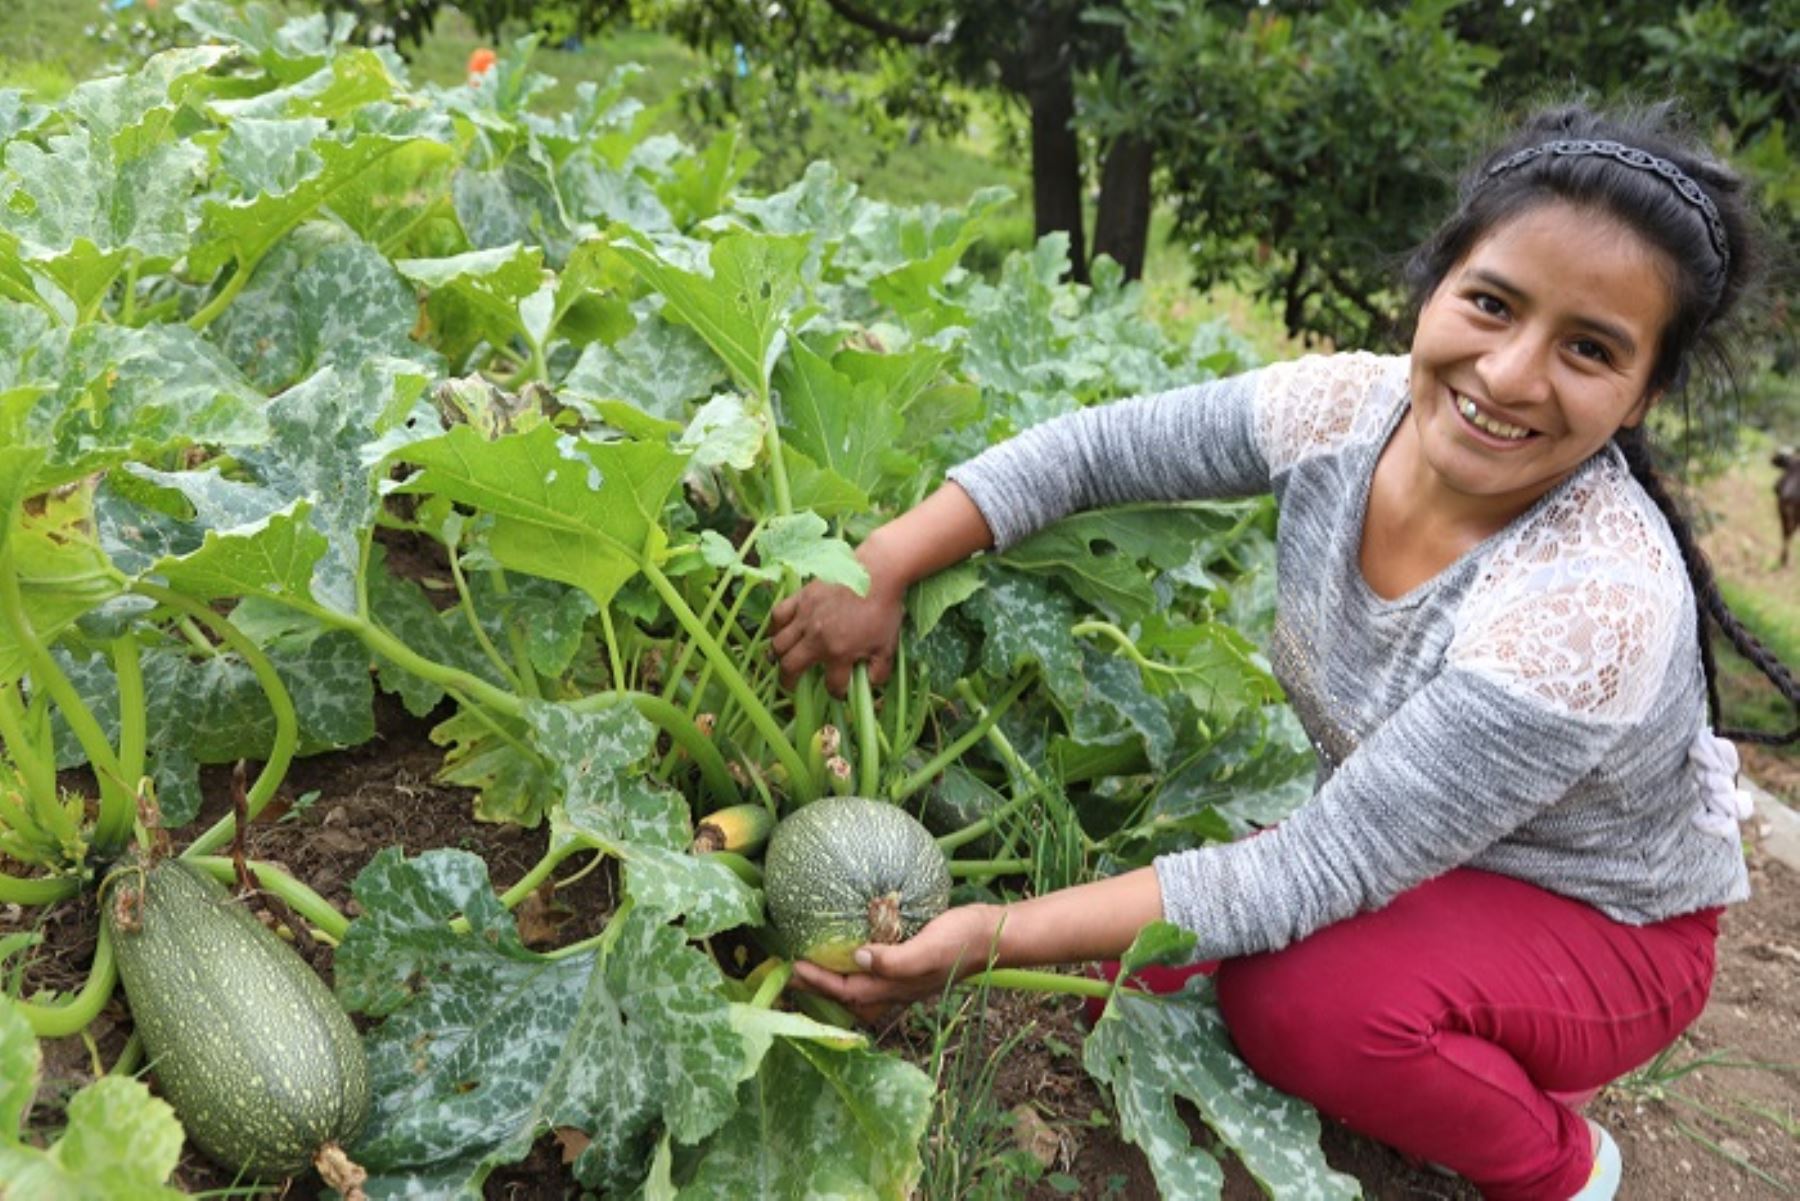 Las familias de las comunidades rurales usuarias de Haku Wiñay/Noa Jayatai experimentan un cambio sostenido en seguridad alimentaria y en sus ingresos económicos.